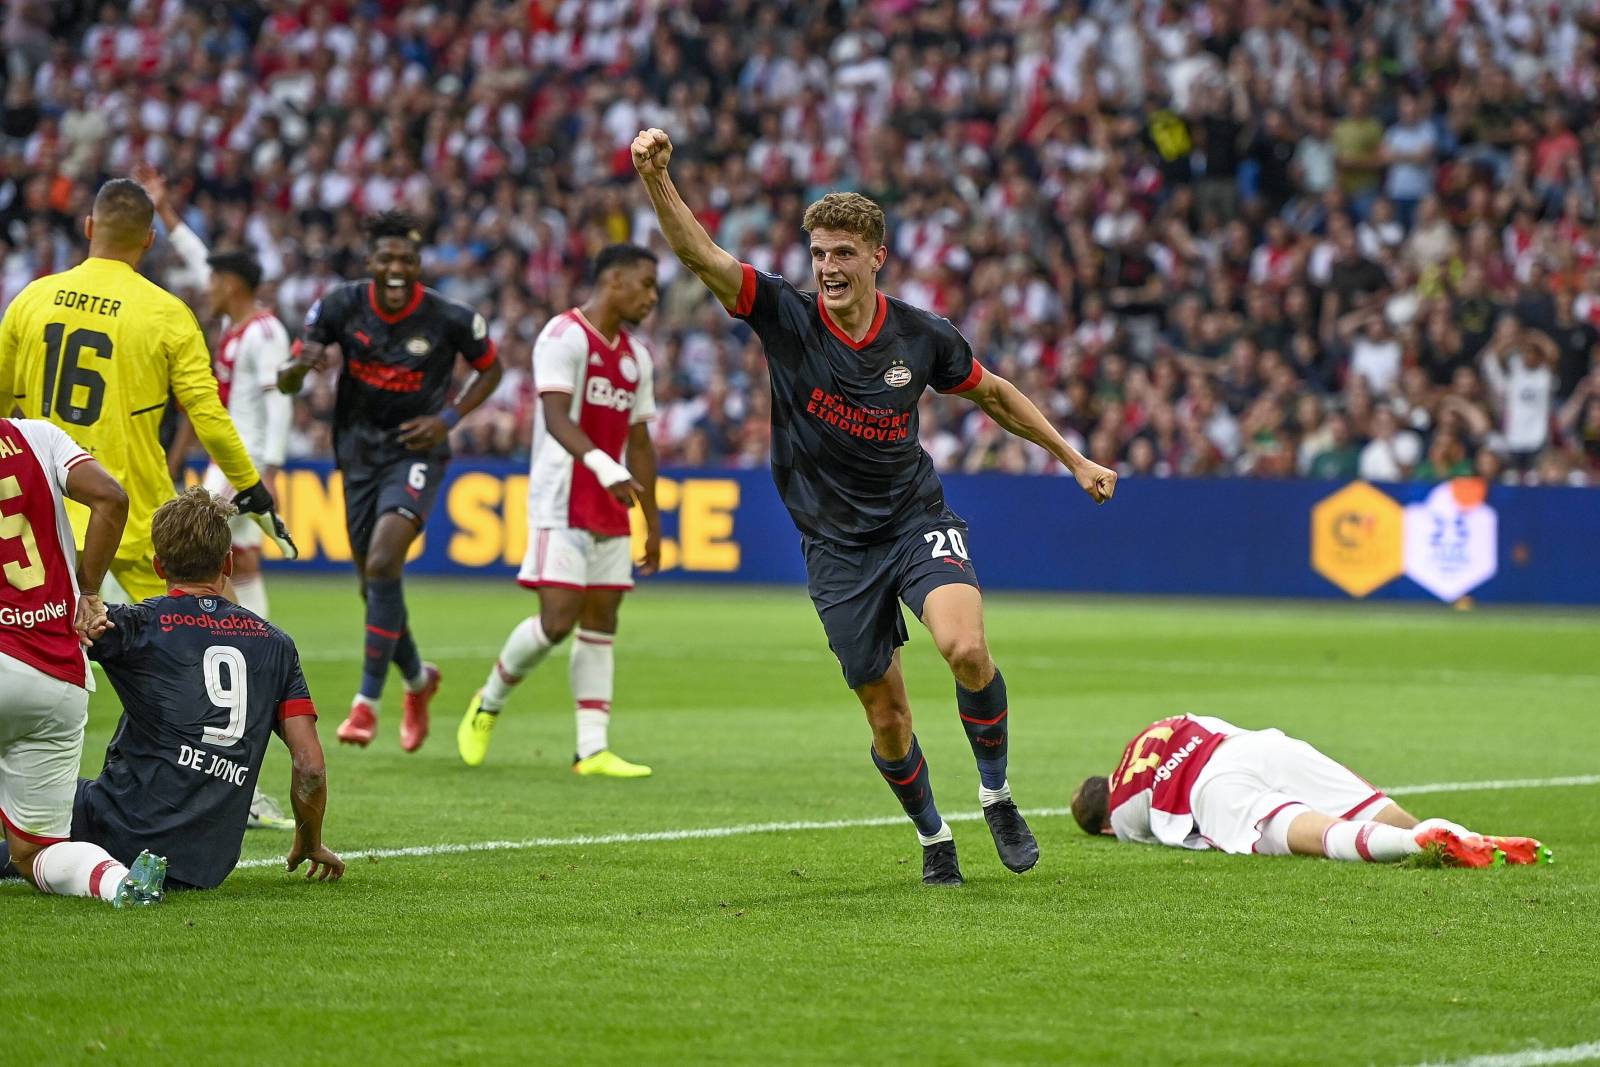 ПСВ и «Аякс» обменялись восемью мячами в матче за Суперкубок Голландии, но победа осталась за «красно-белыми»